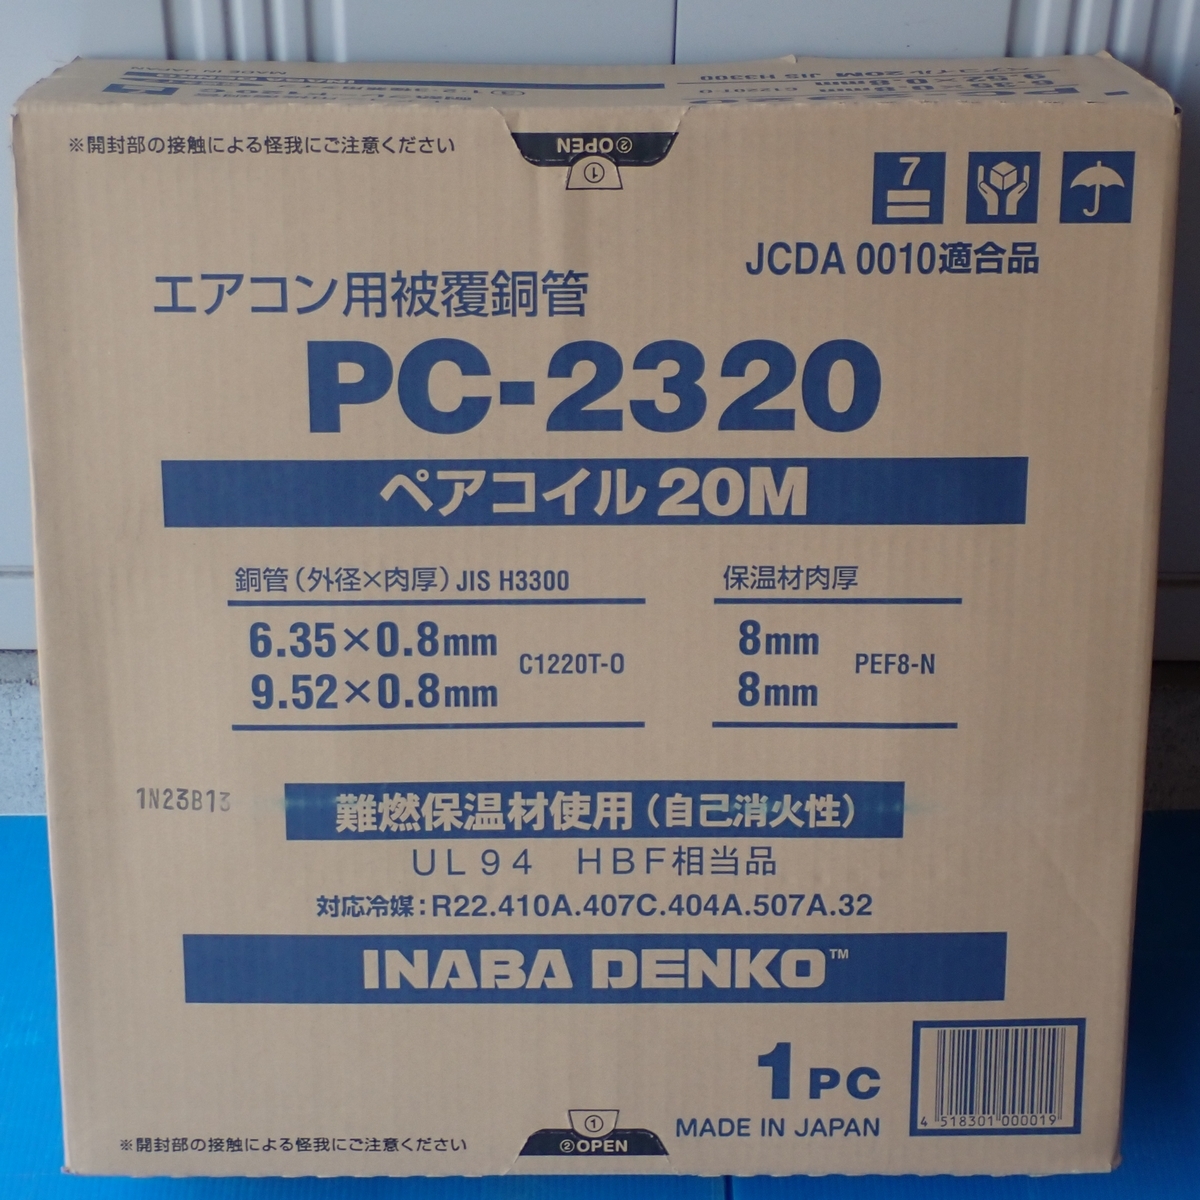 【質屋】因幡電工 ペアコイル PC-2320（2分3分 20m）1巻 新品未開封 エアコン配管用被覆銅管 [1474]